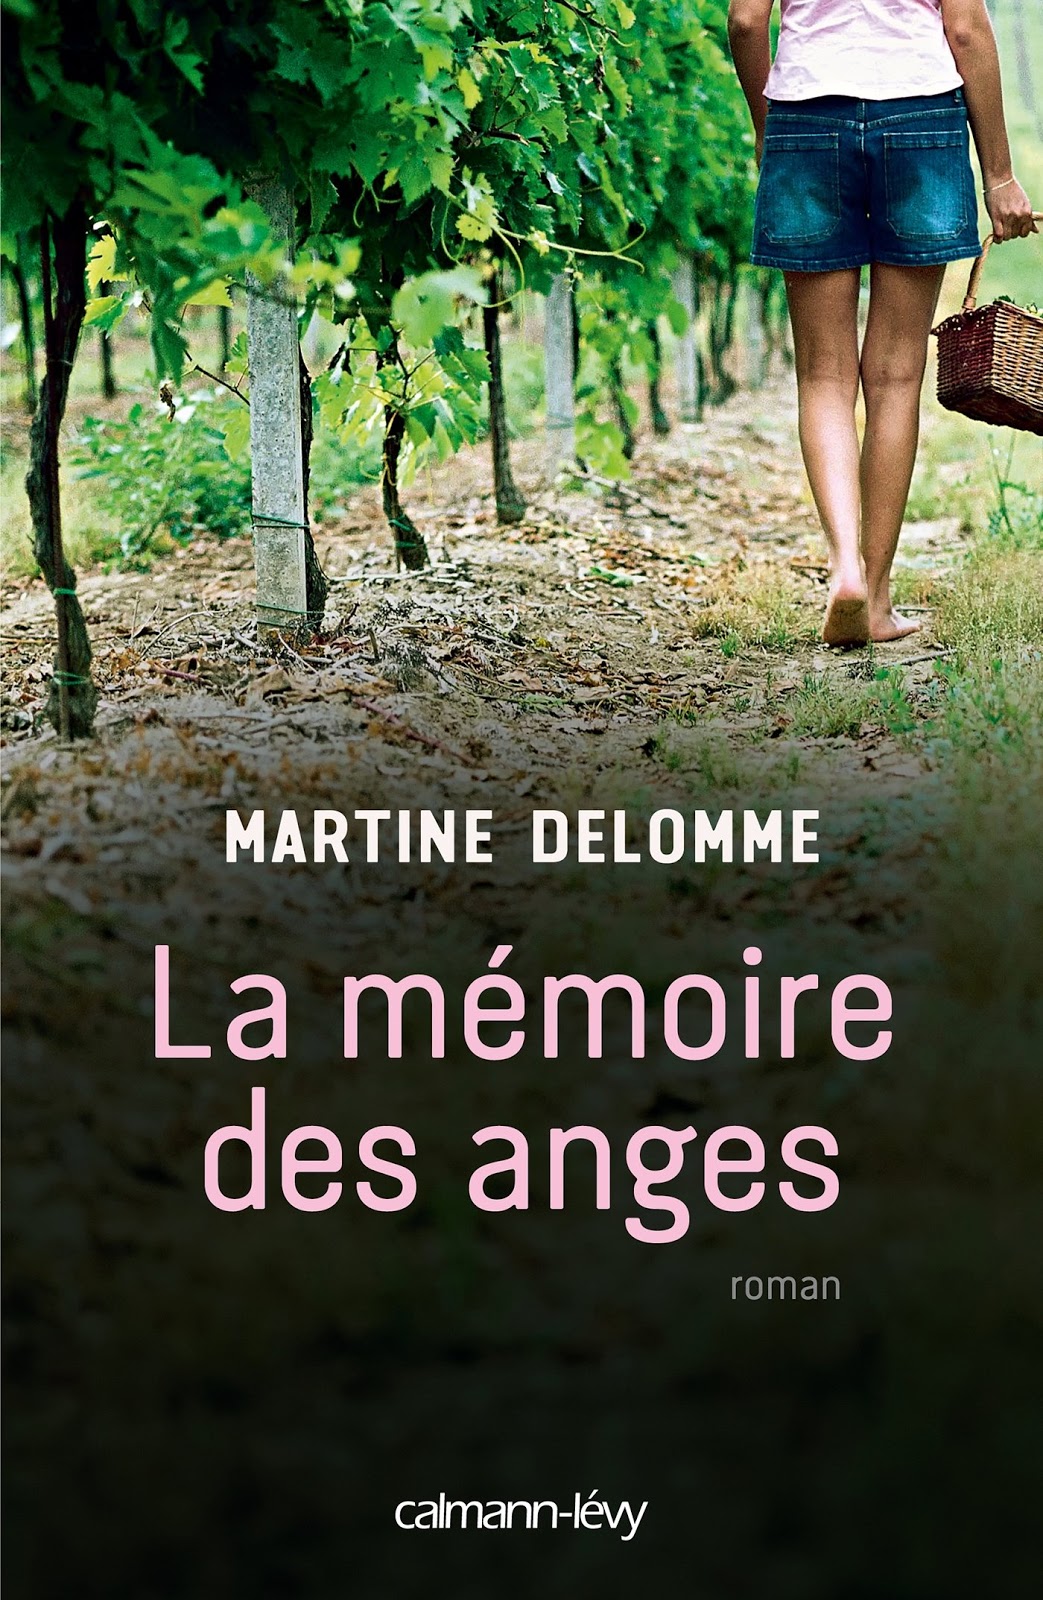 Delomme Martine ♦ La mémoire des anges